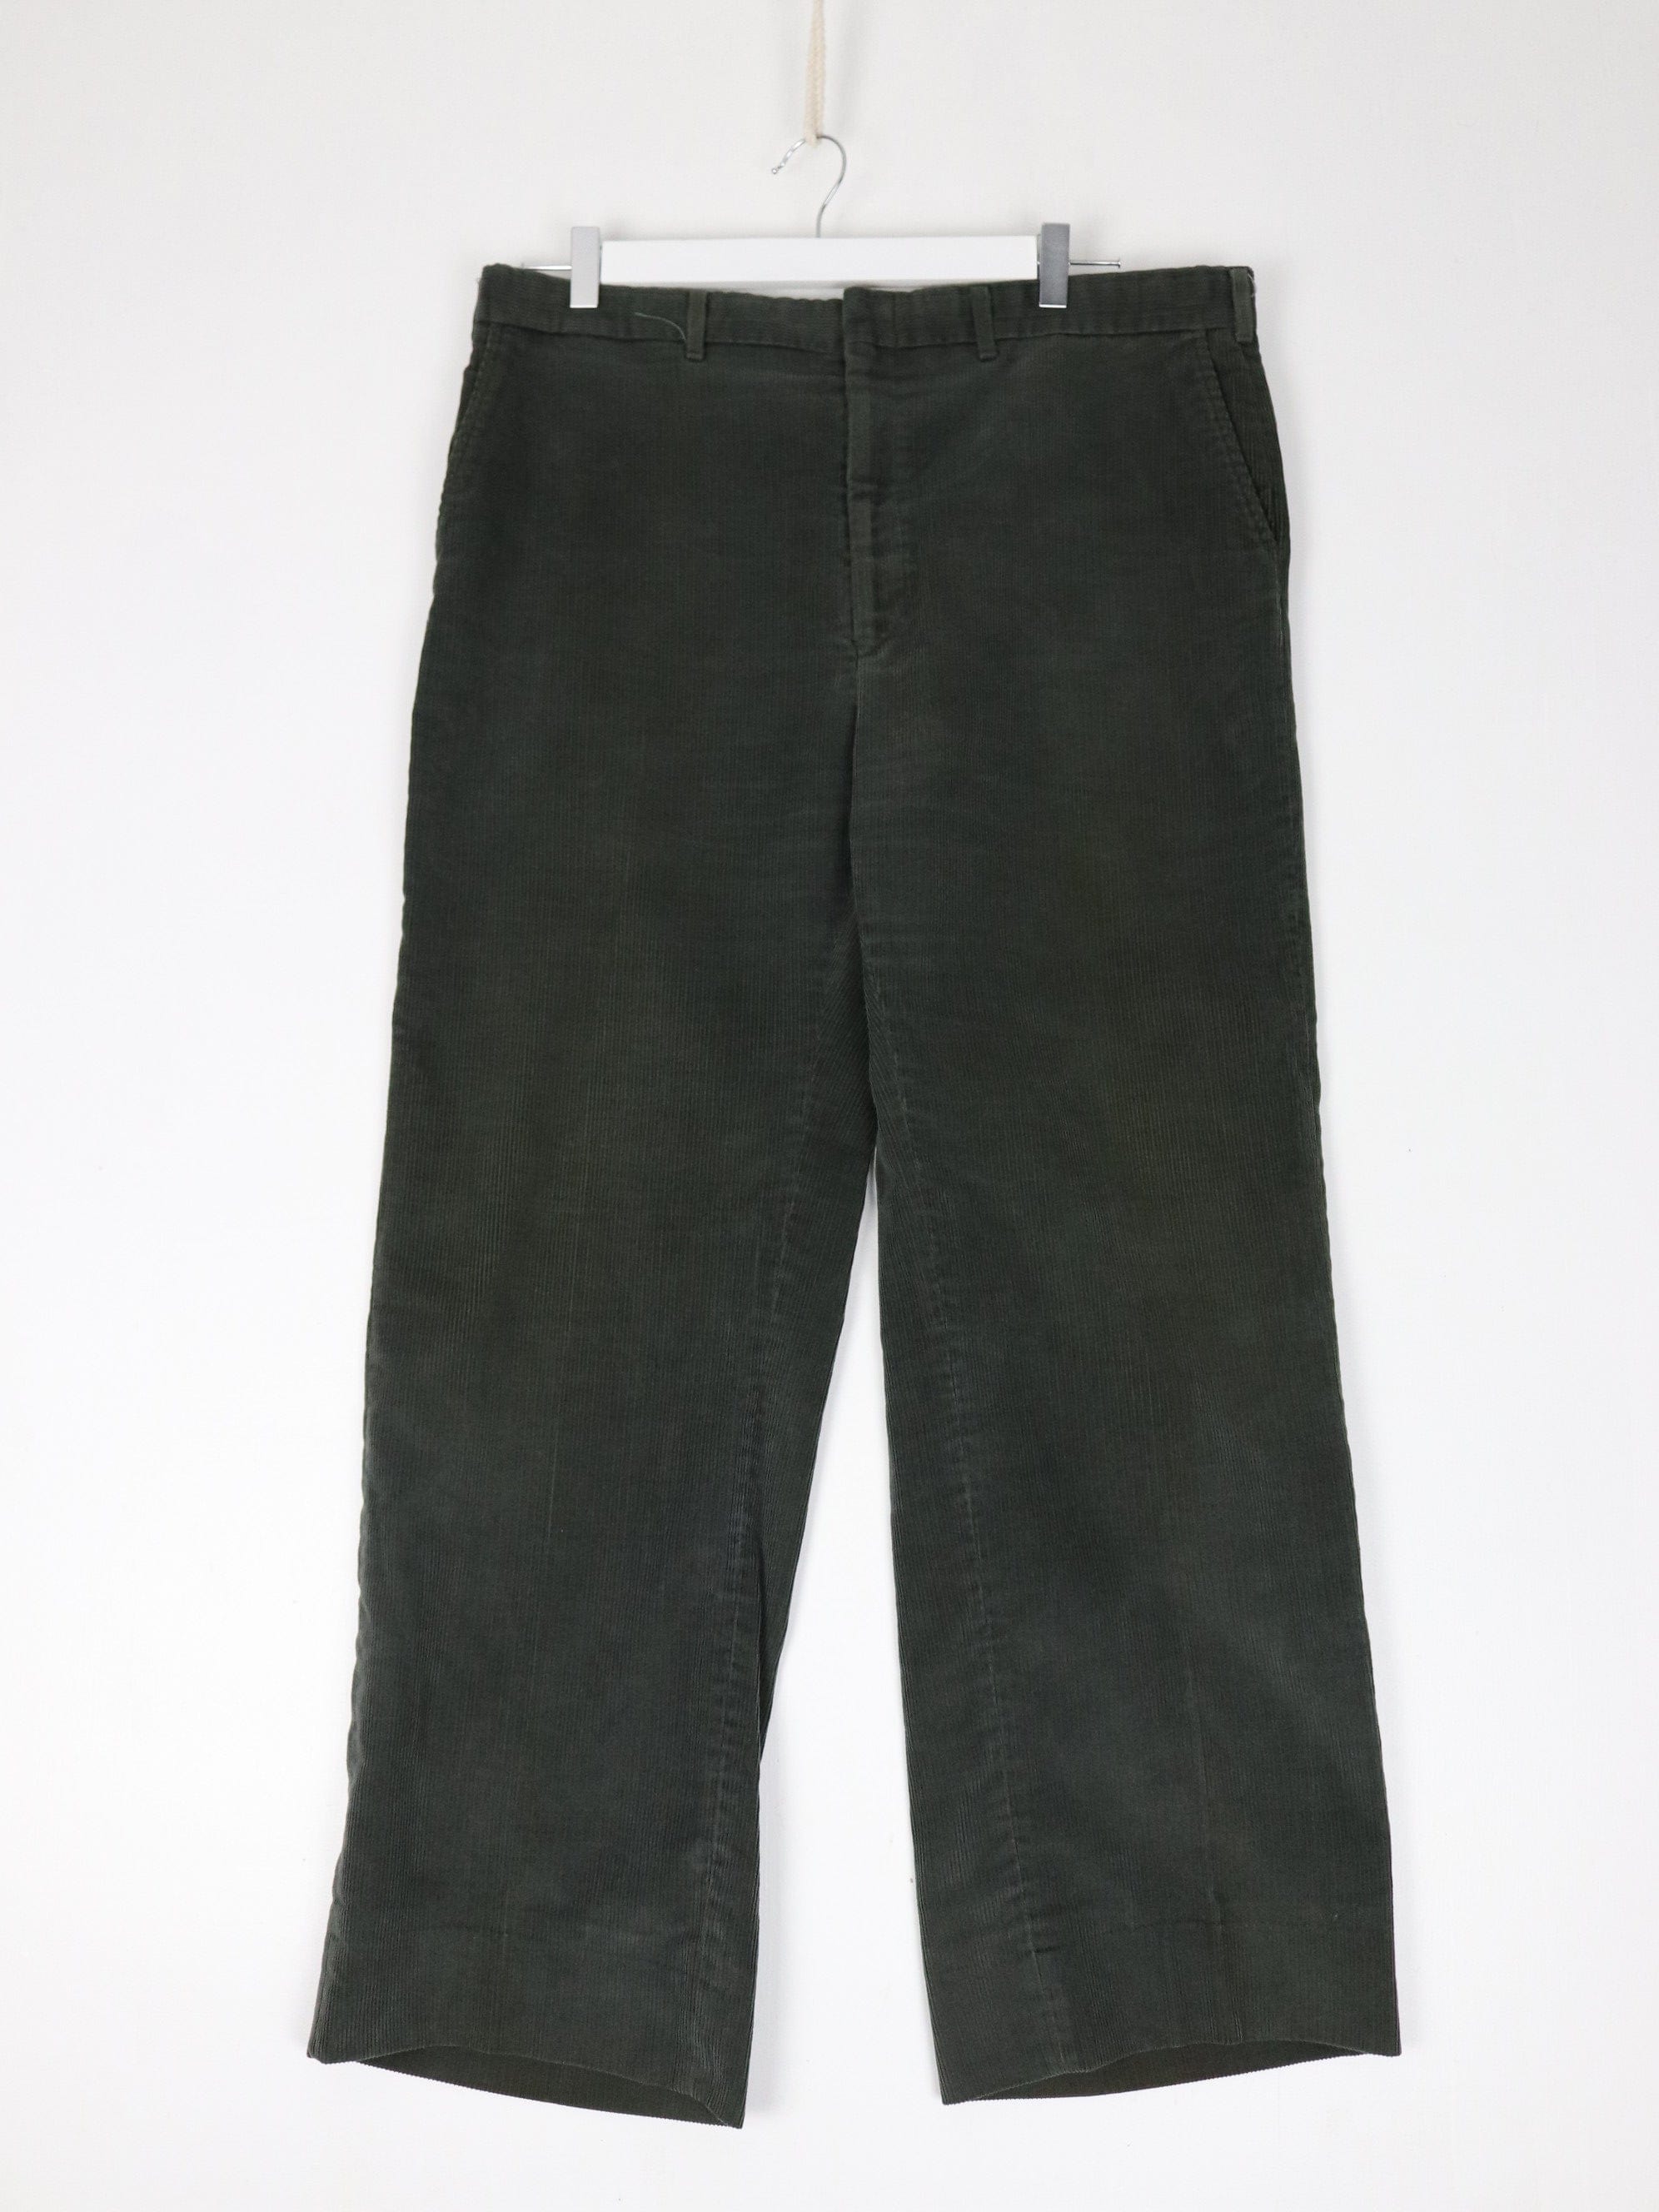 Vintage Haggar Pants Mens 37 x 28 Green Corduroy Trousers – Proper Vintage